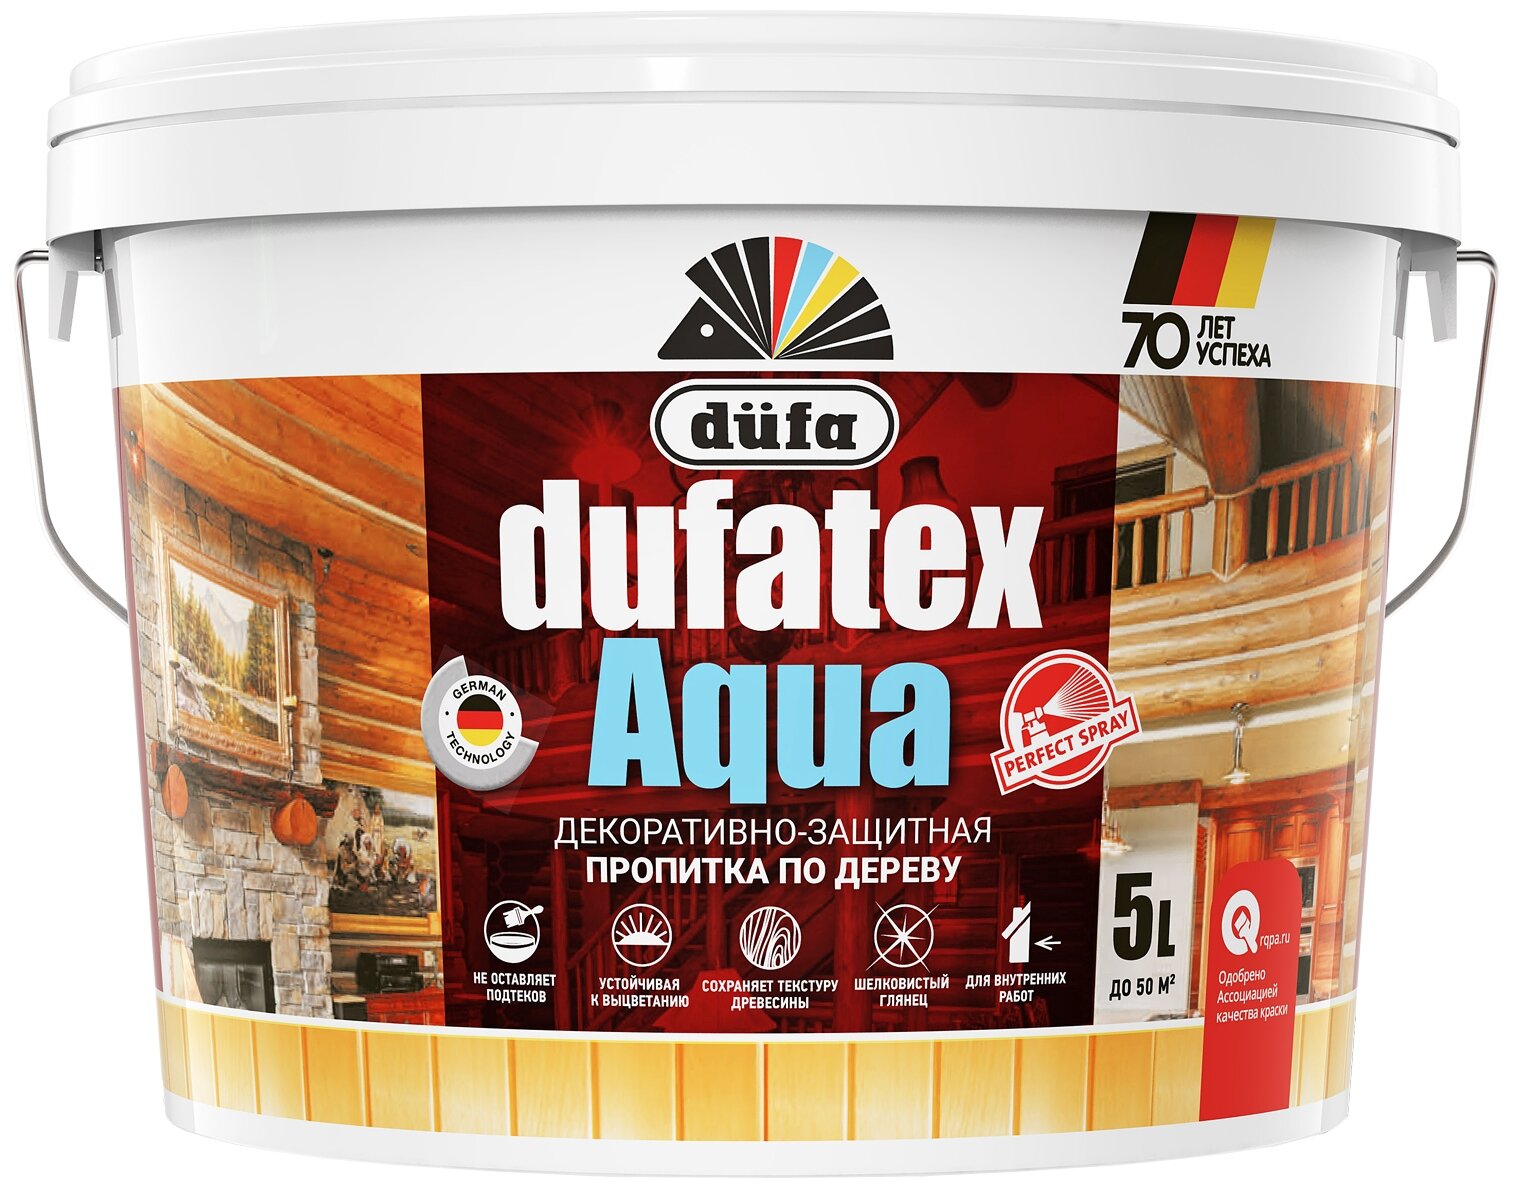      Dufatex aqua 5 